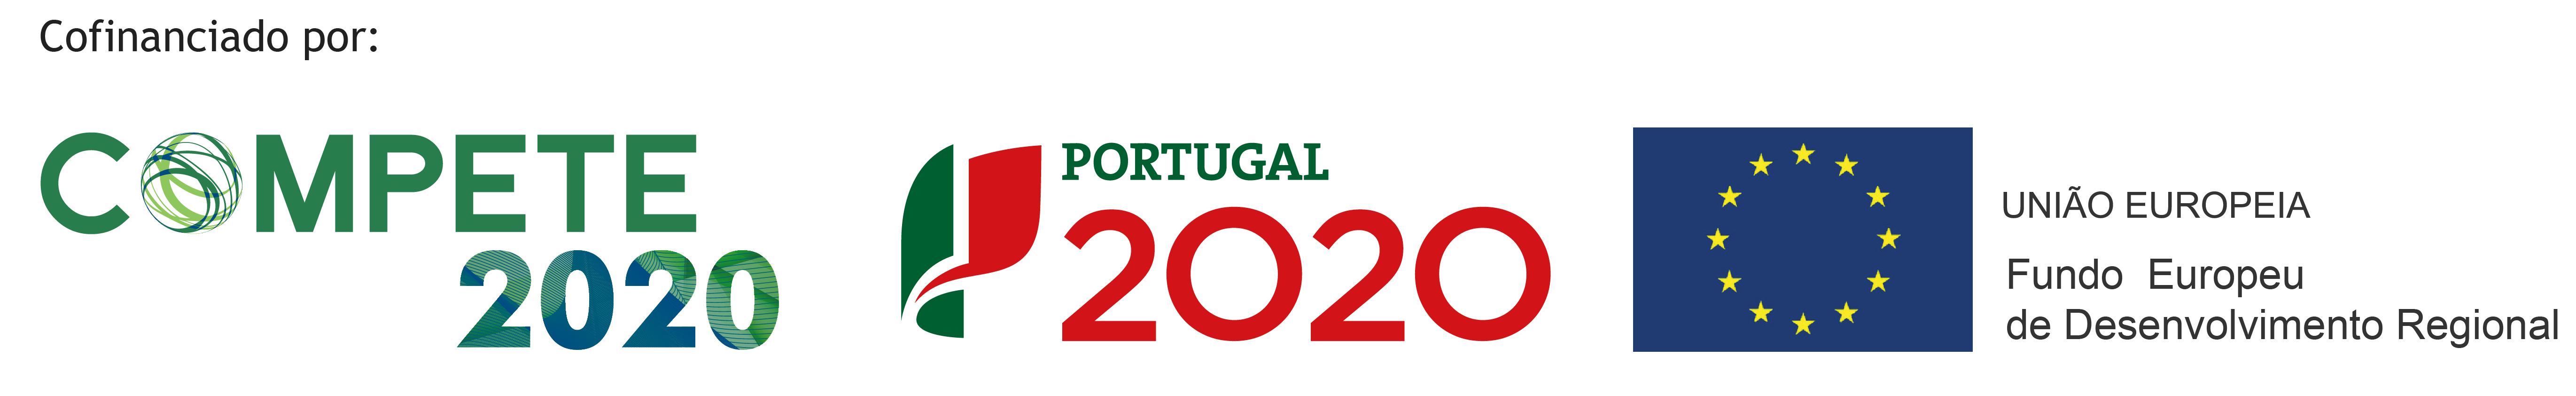 Cofinanciado por: Compete 2020, Portugal 2020, União Europeia Fundo Europeu de Desenvolvimento Regional